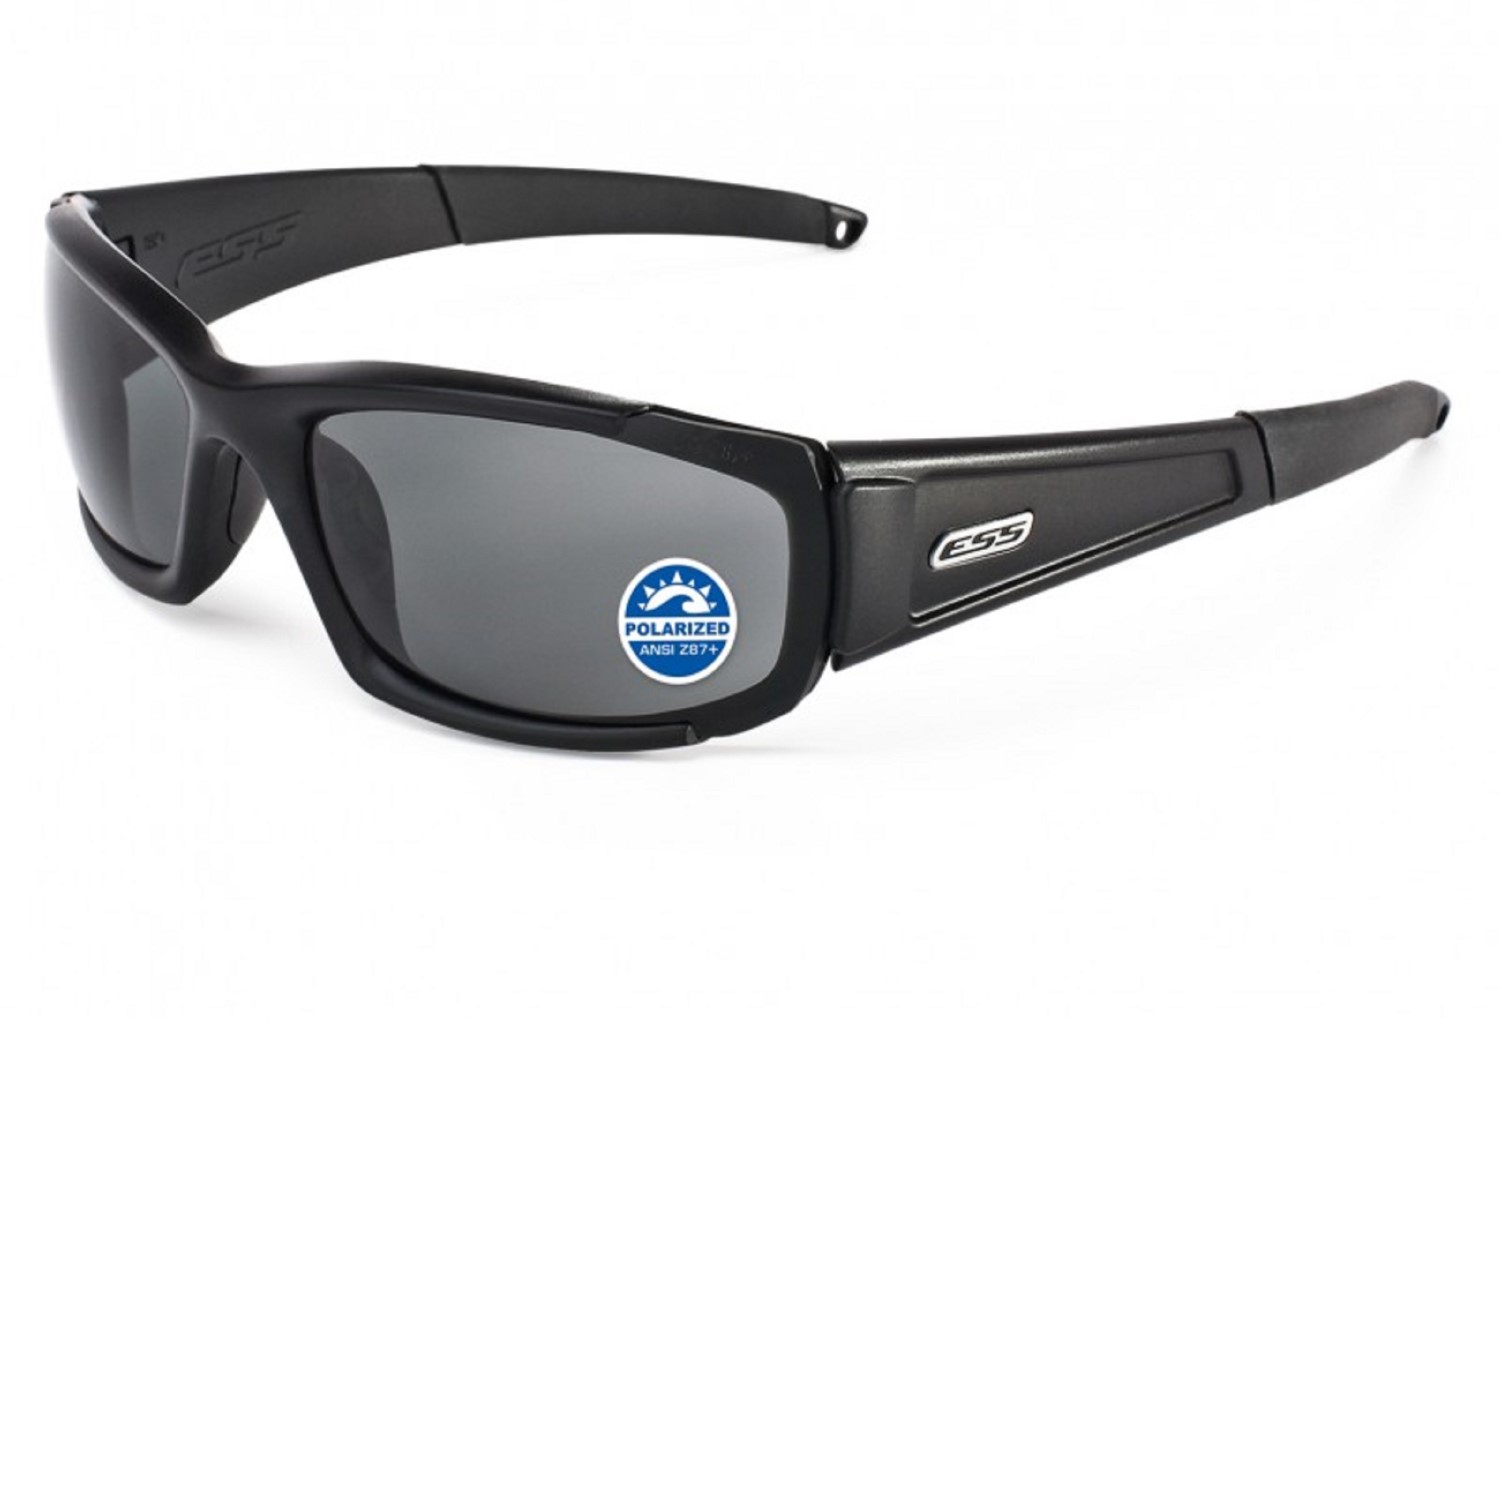 Купить очки ess. Тактические очки ESS. Очки ESS CDI. Eye Safety Systems очки. ESS CDI™ High-Impact sunglas.